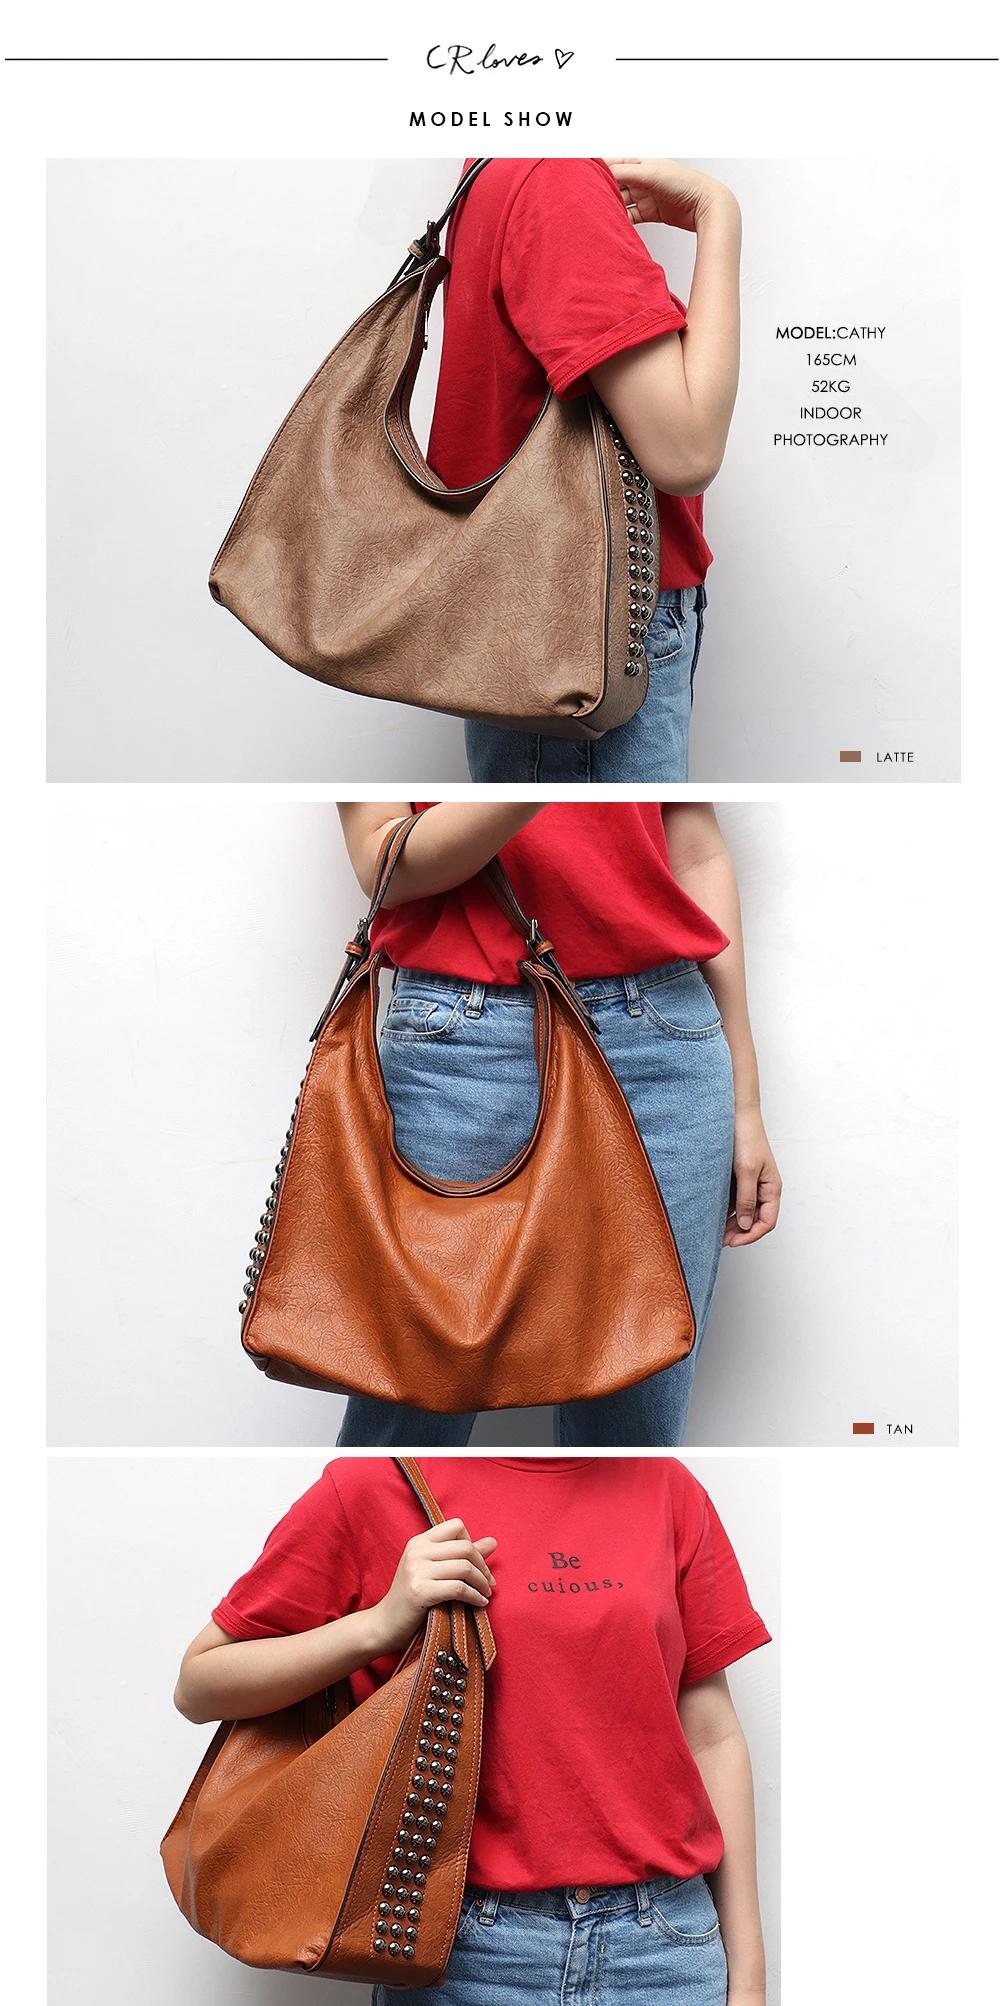 CEZIRA брендовые модные сумки через плечо для женщин дизайнерская Повседневная Большая Сумка-тоут женская сумка на молнии с заклепками из искусственной кожи Женская сумочка